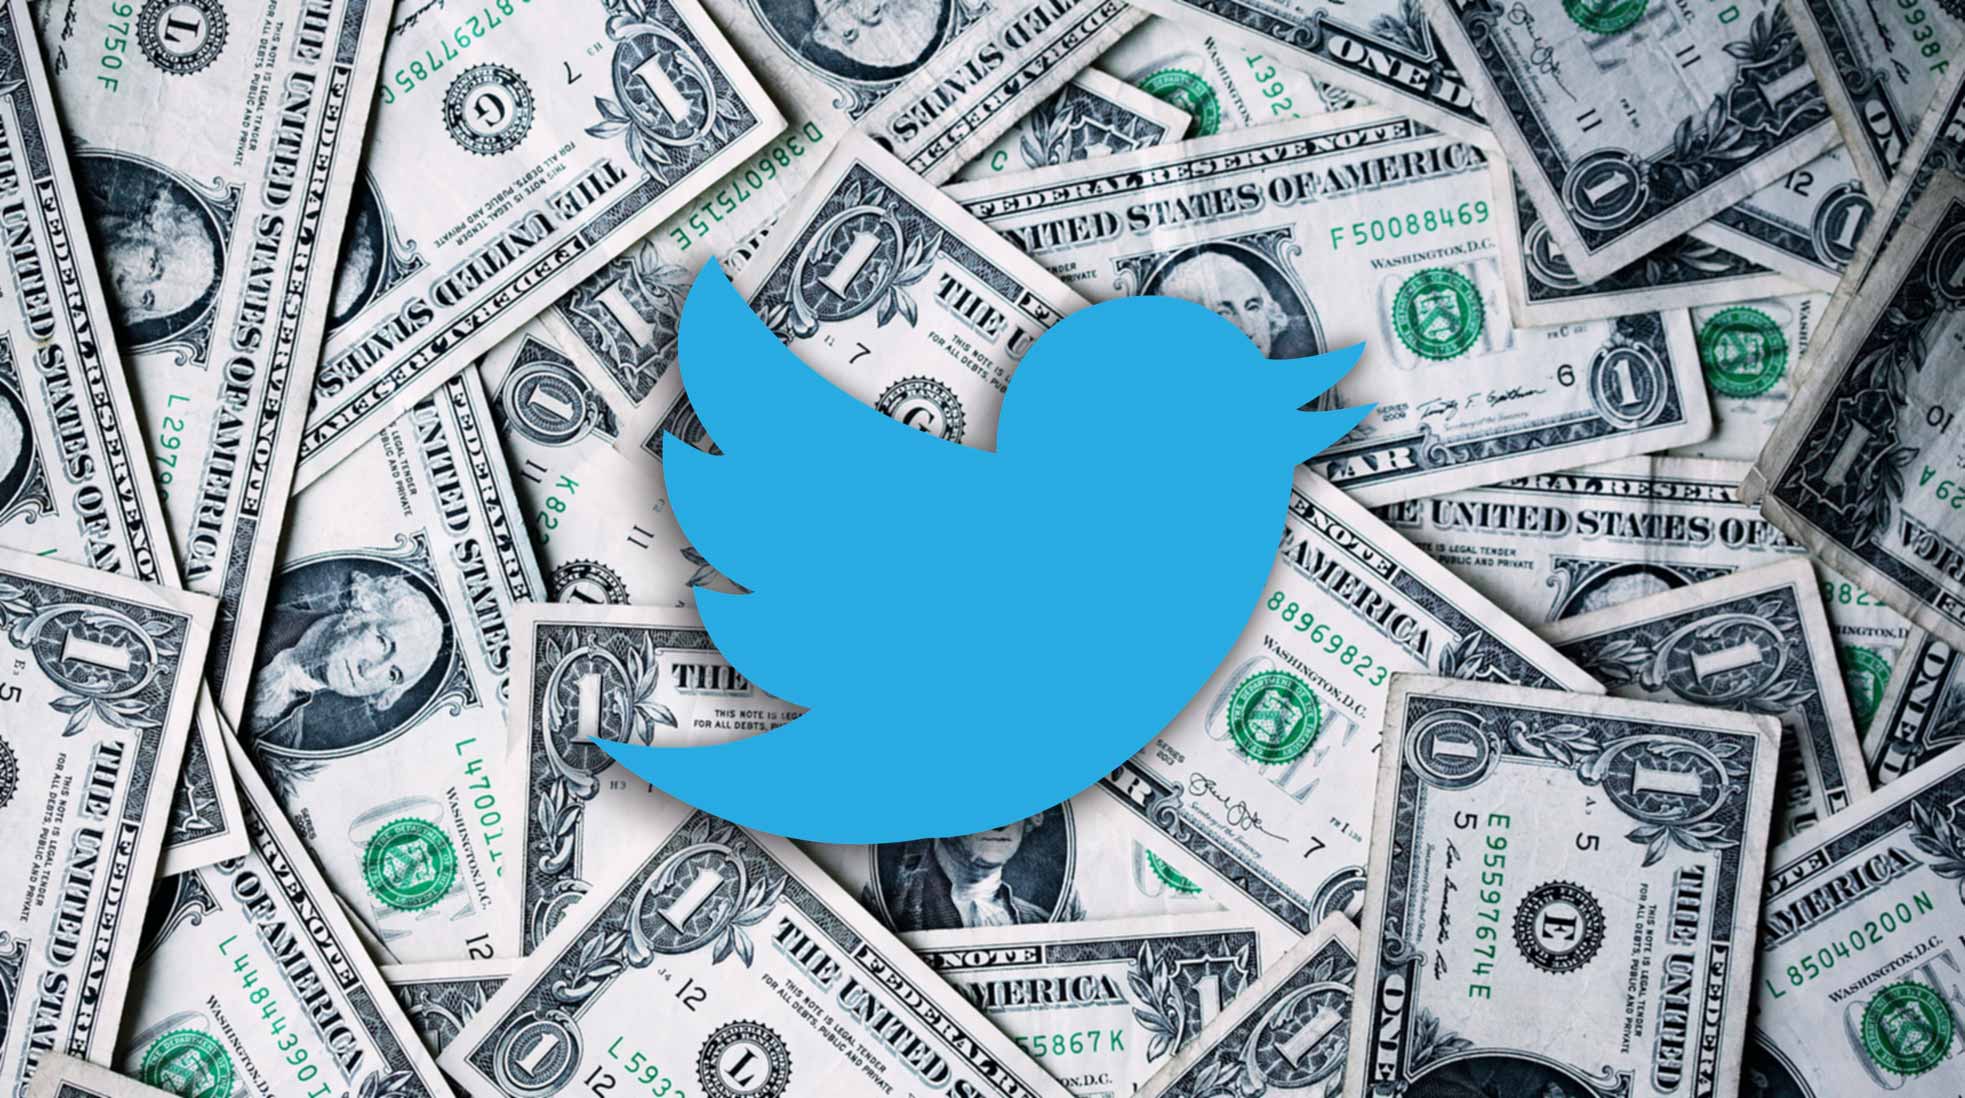 En dollar per år – det blir priset för den som vill skriva på Twitter/X. Foto: Alexander Grey/Unsplash, twitterfågel: Mudassar Iqbal/Pixabay. Kollage: Media.nu